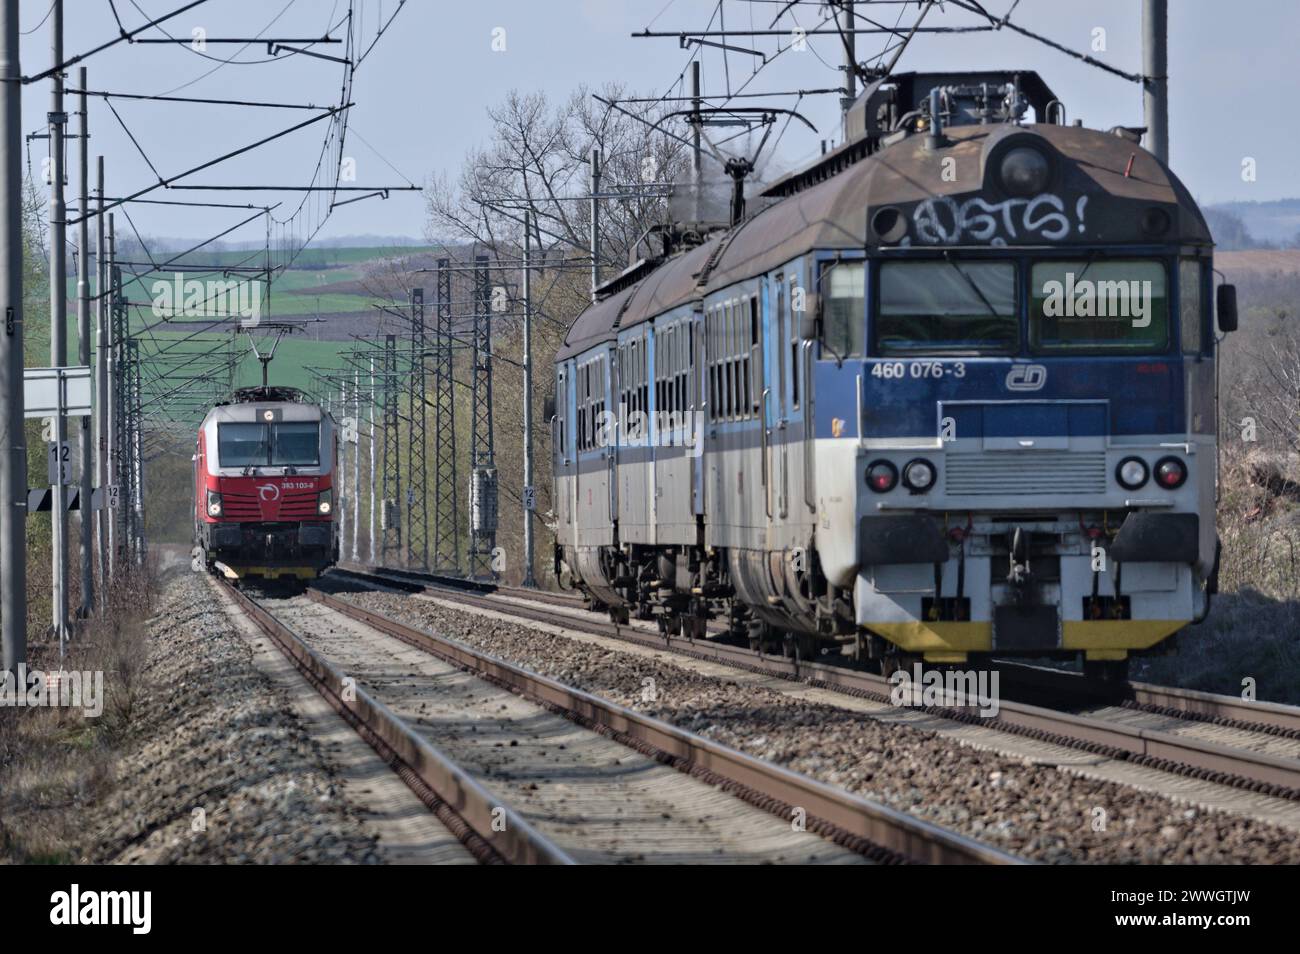 Treni locali regionali dell'impresa statale Ceske Drahy - Ferrovie ceche. Importante operatore ferroviario nella Repubblica ceca. Foto Stock